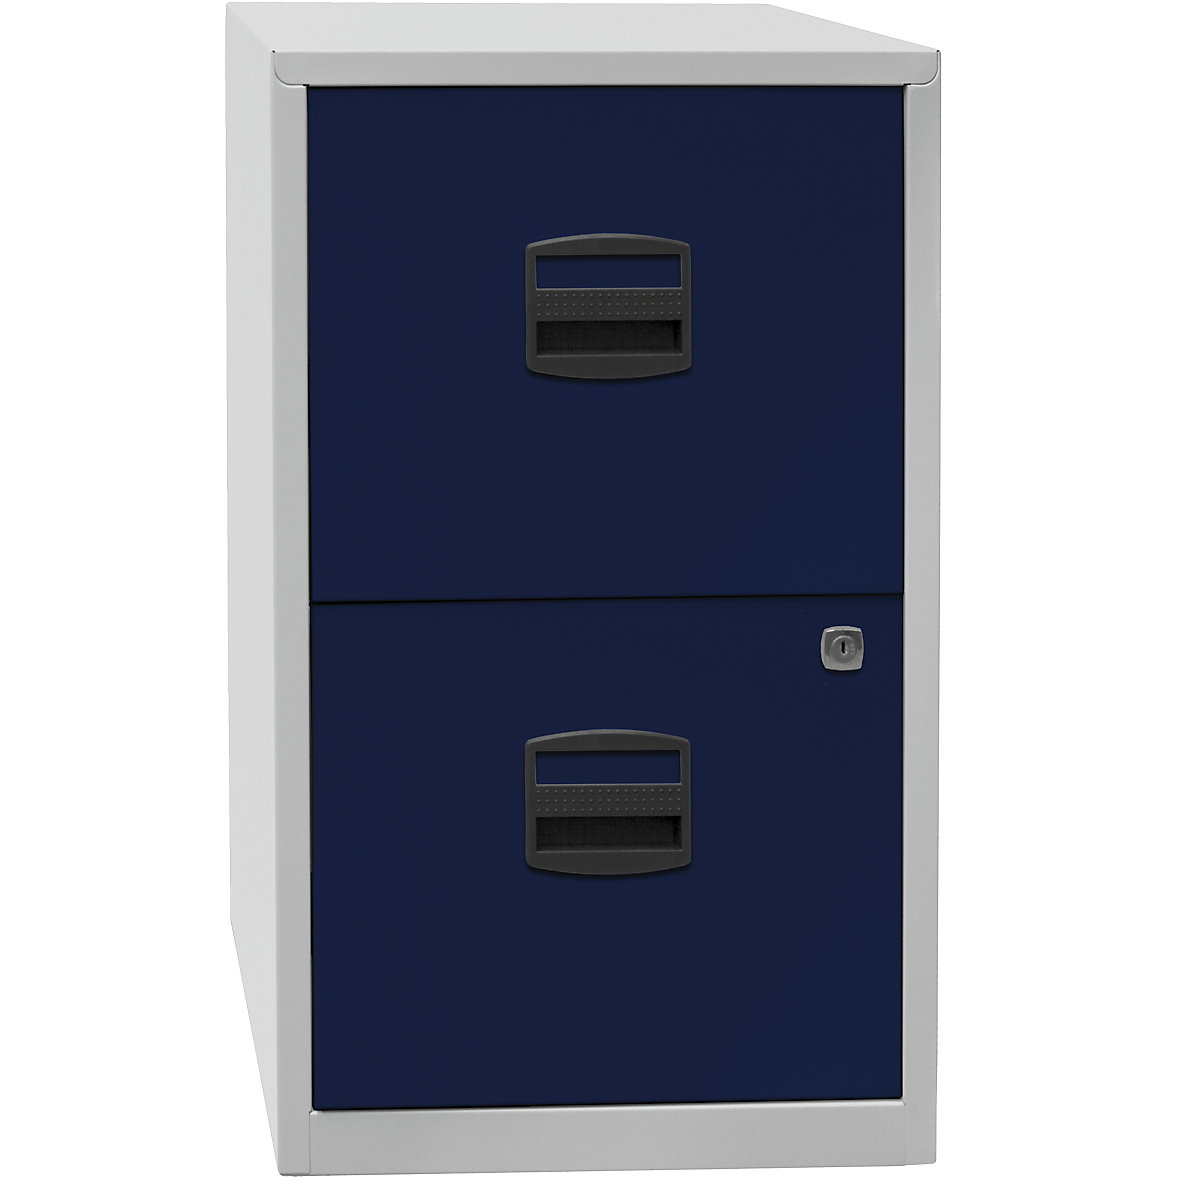 Classificatore per cartelle sospese PFA – BISLEY, 2 cassetti, grigio chiaro / blu oxford-3